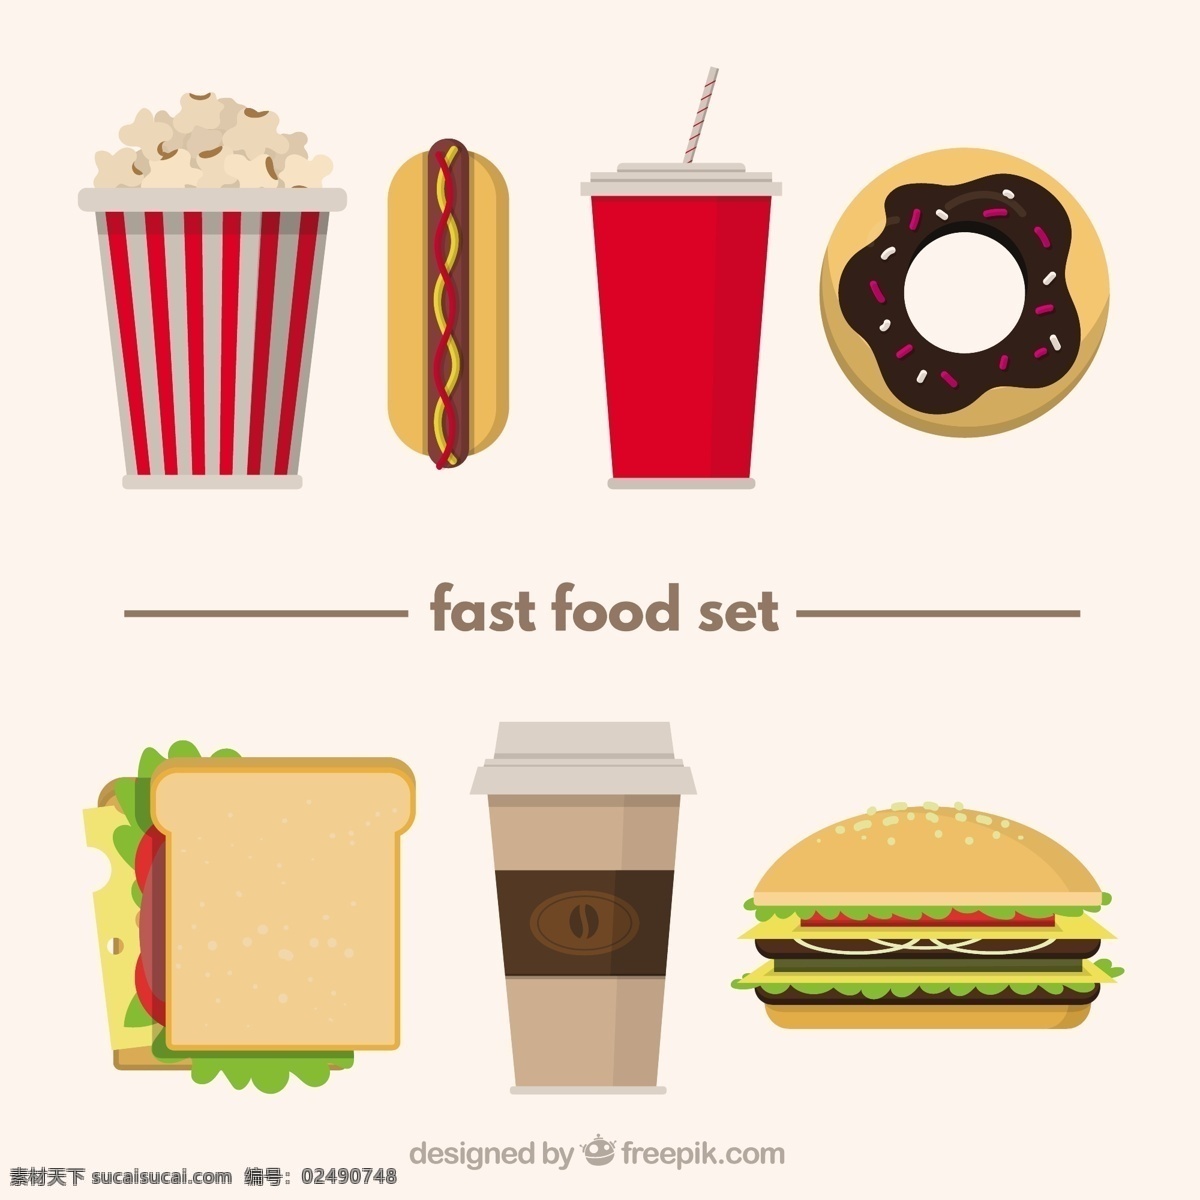 平面设计 中 快餐 品种 食物 菜单 咖啡 狗 公寓 汉堡 饮料 食物菜单 吃 三明治 爆米花 甜甜圈 快 热狗 餐